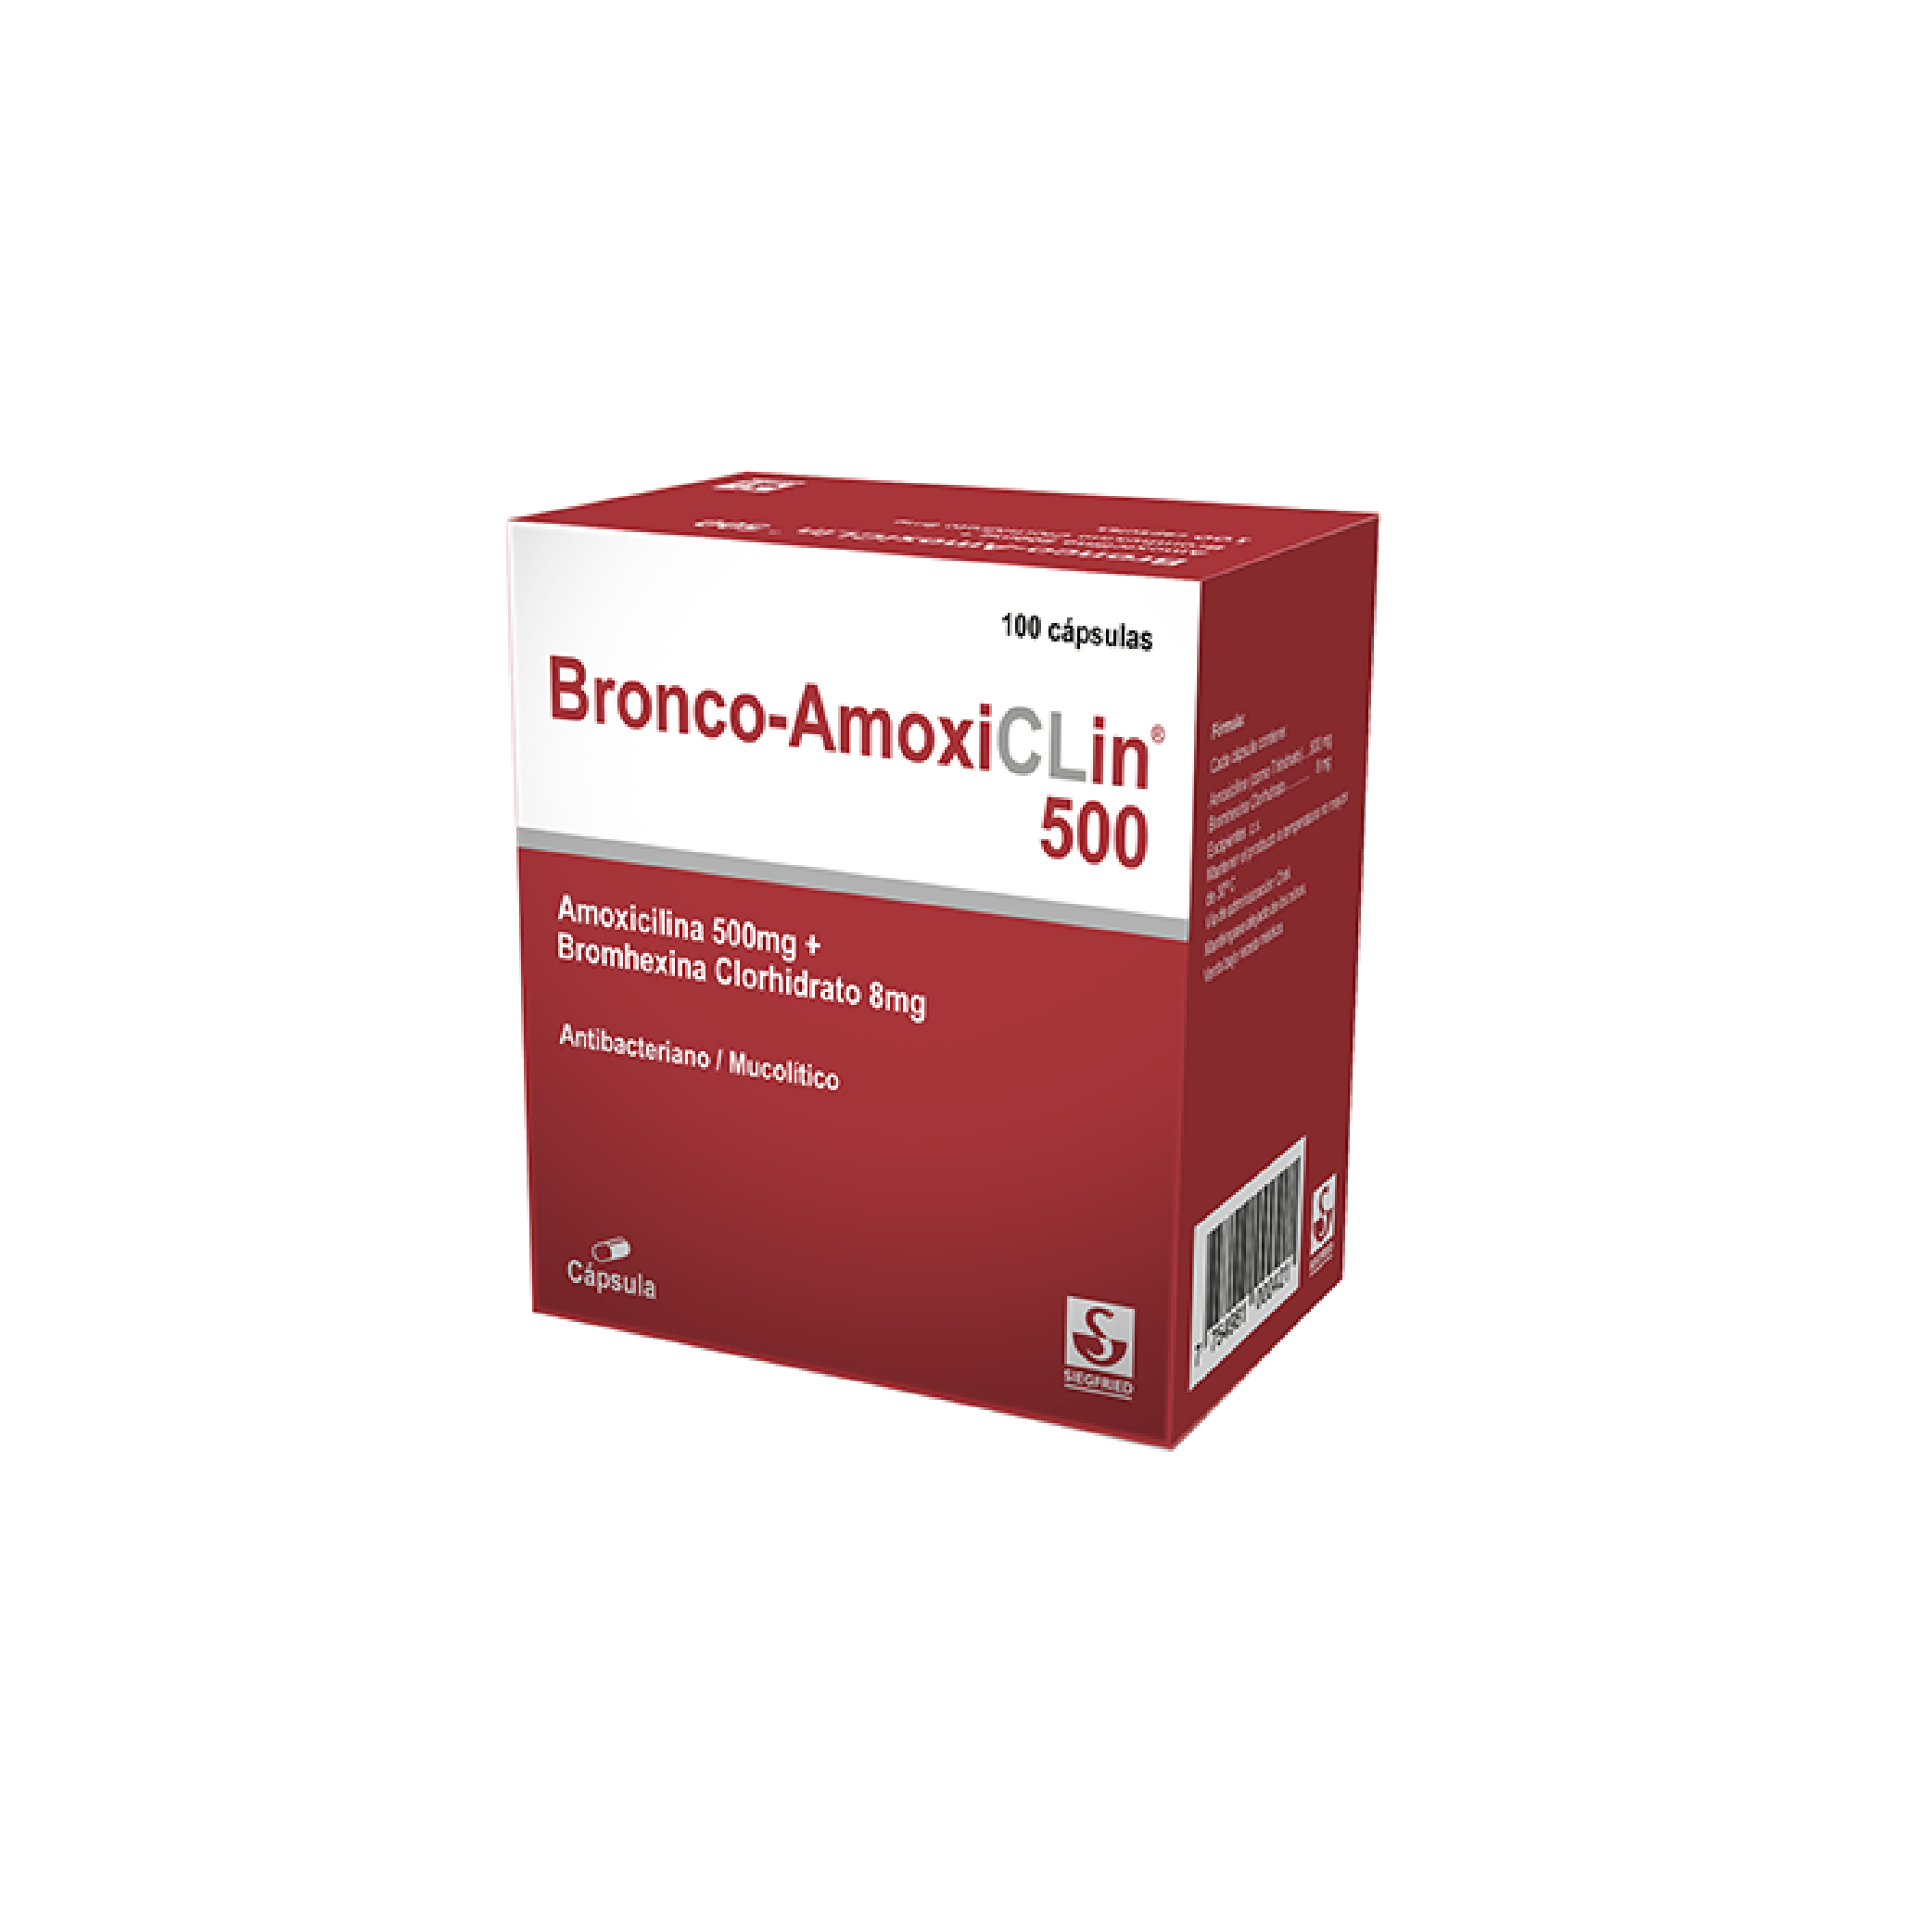 Bronco-Amoxiclin 500 mg - Caja 100 Tabletas